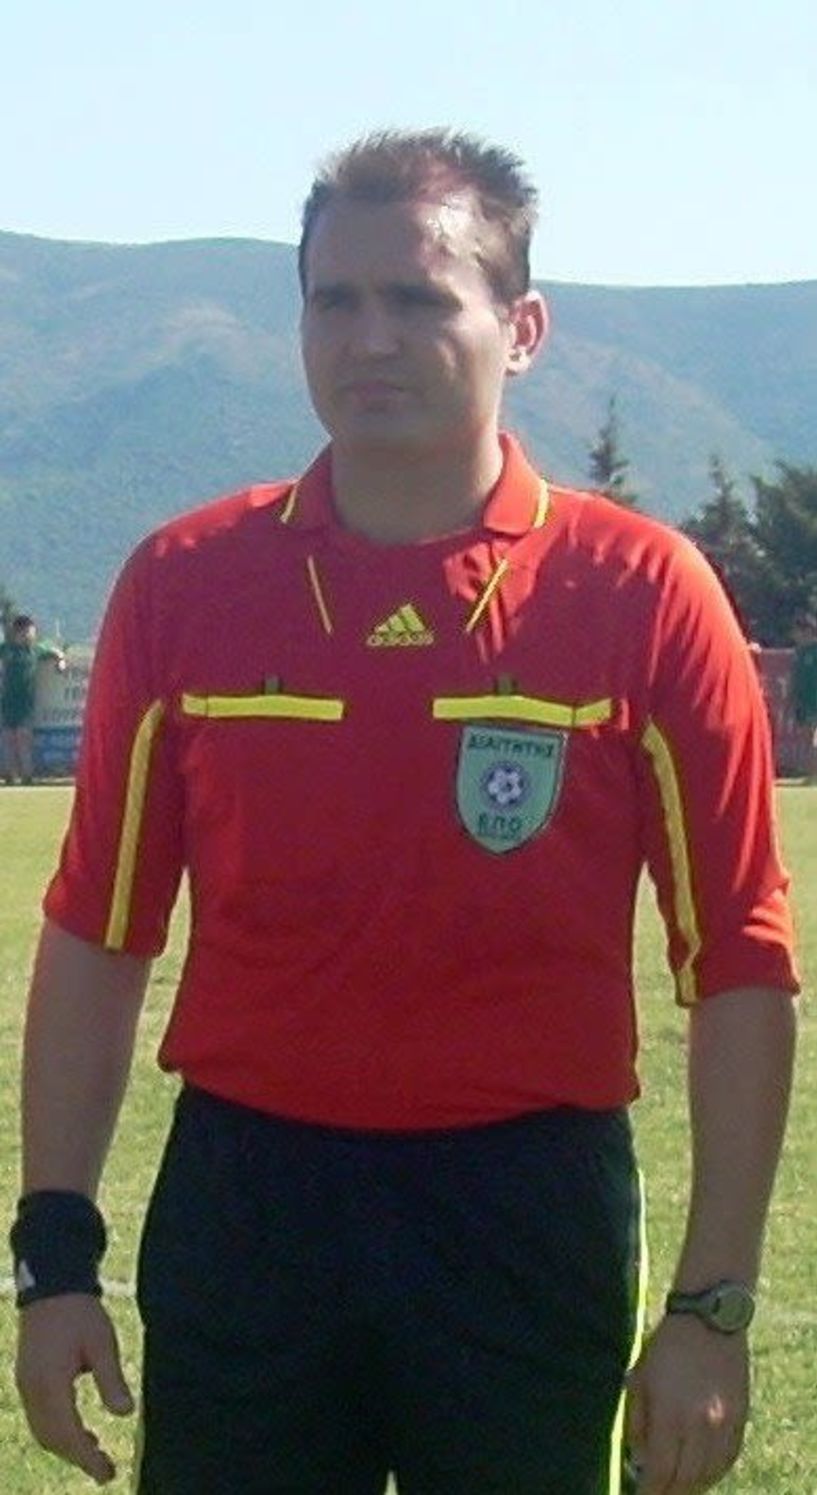 Διαιτητές γ΄εθνικής 2η αγωνιστική . Μακεδονικός- Ελπίδα Σκουτάρεως (Βέροια) διαιτητής ο κ. Τσακαλίδης (Χαλκιδικής ) 